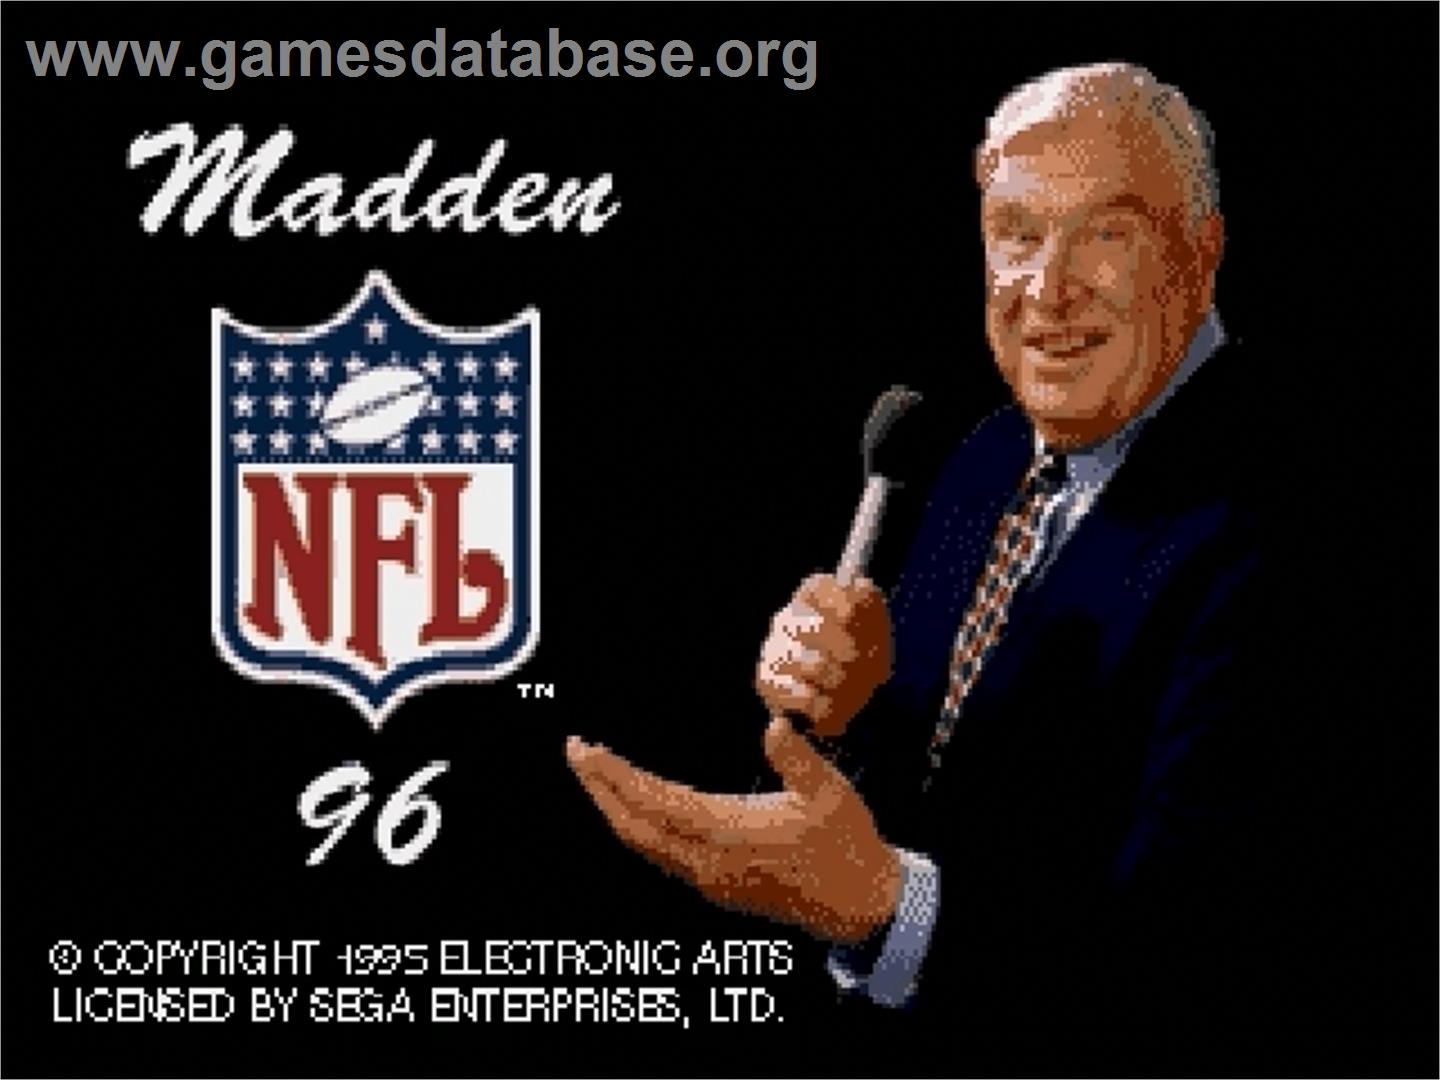 Madden NFL '96 - Sega Genesis - Artwork - Title Screen